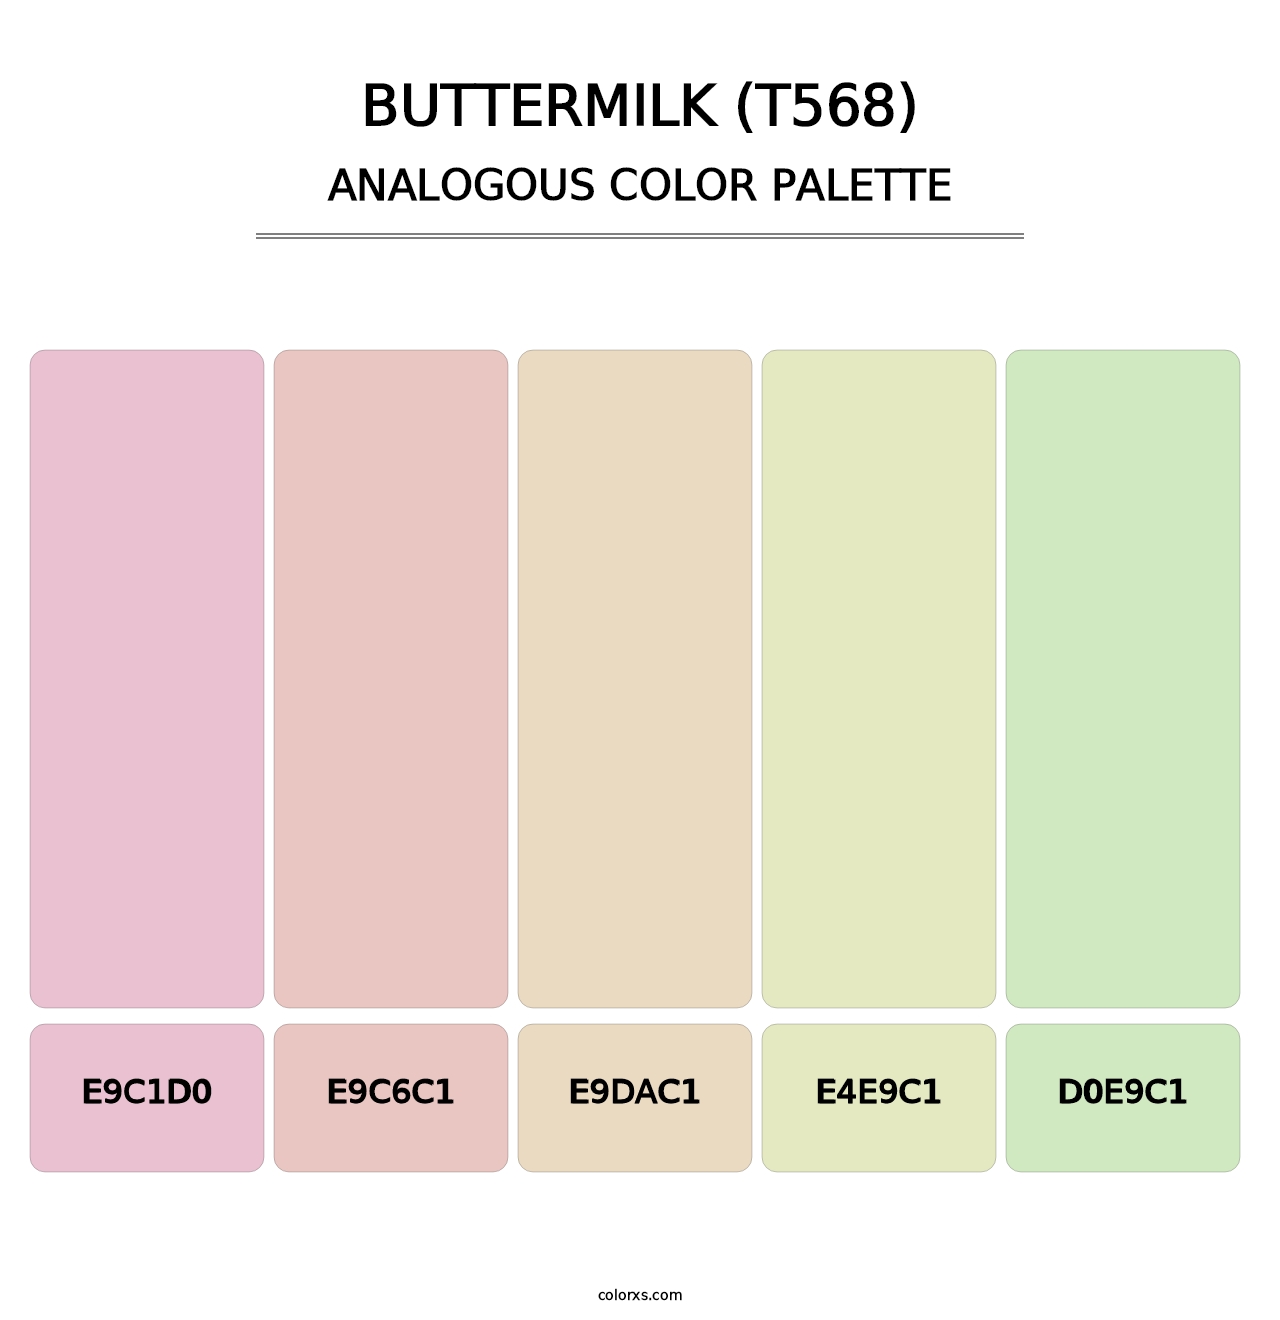 Buttermilk (T568) - Analogous Color Palette